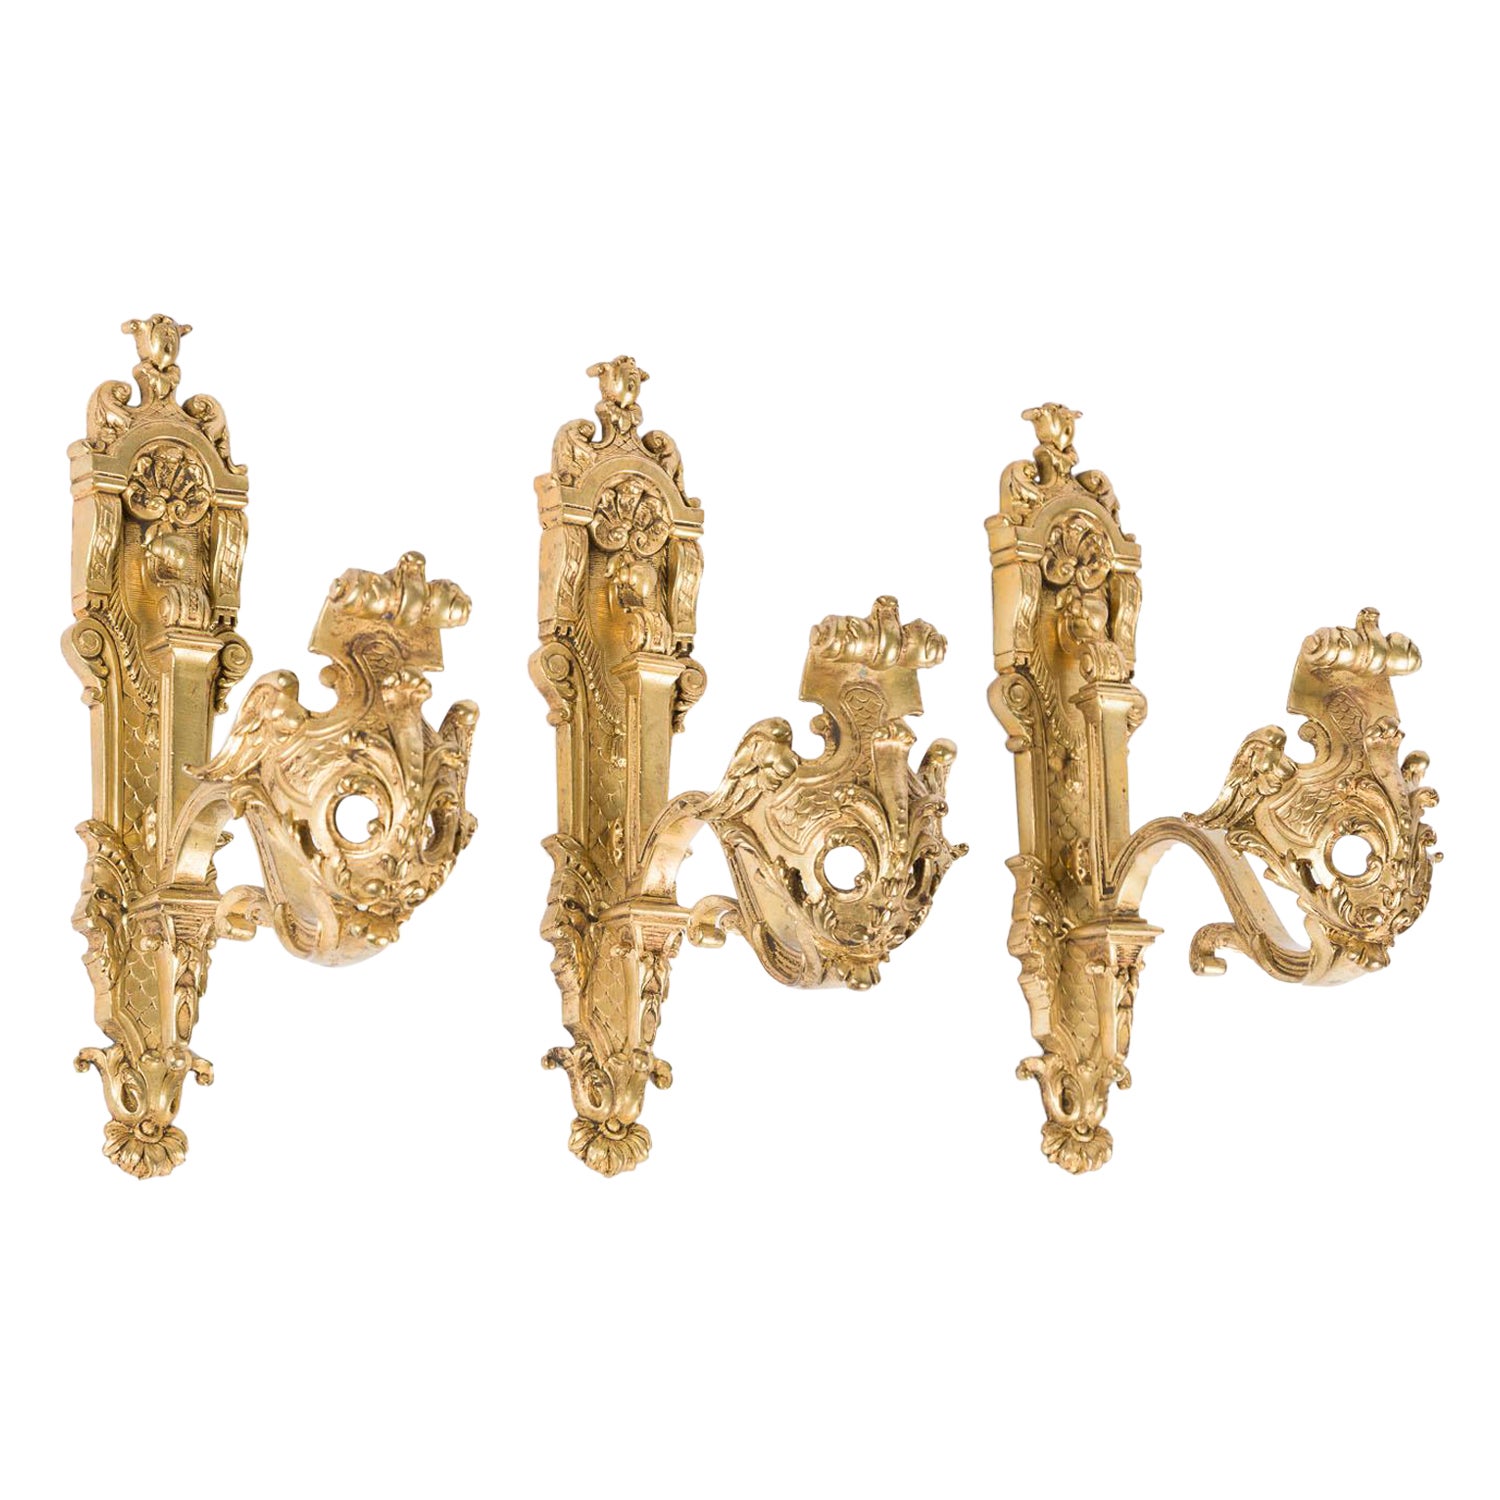 Ensemble de 3 crochets de rideaux en bronze doré ornés de style Louis XV